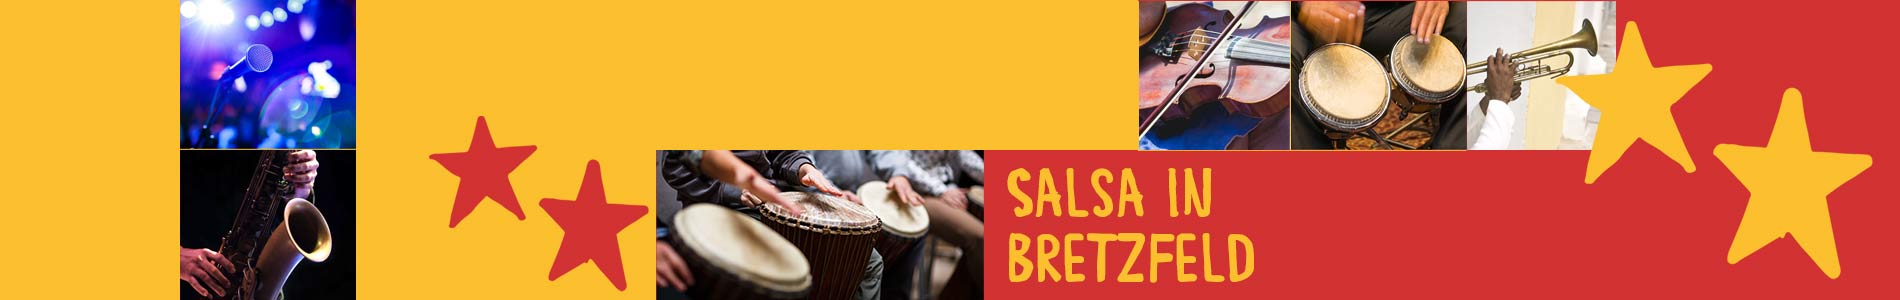 Salsa in Bretzfeld – Salsa lernen und tanzen, Tanzkurse, Partys, Veranstaltungen